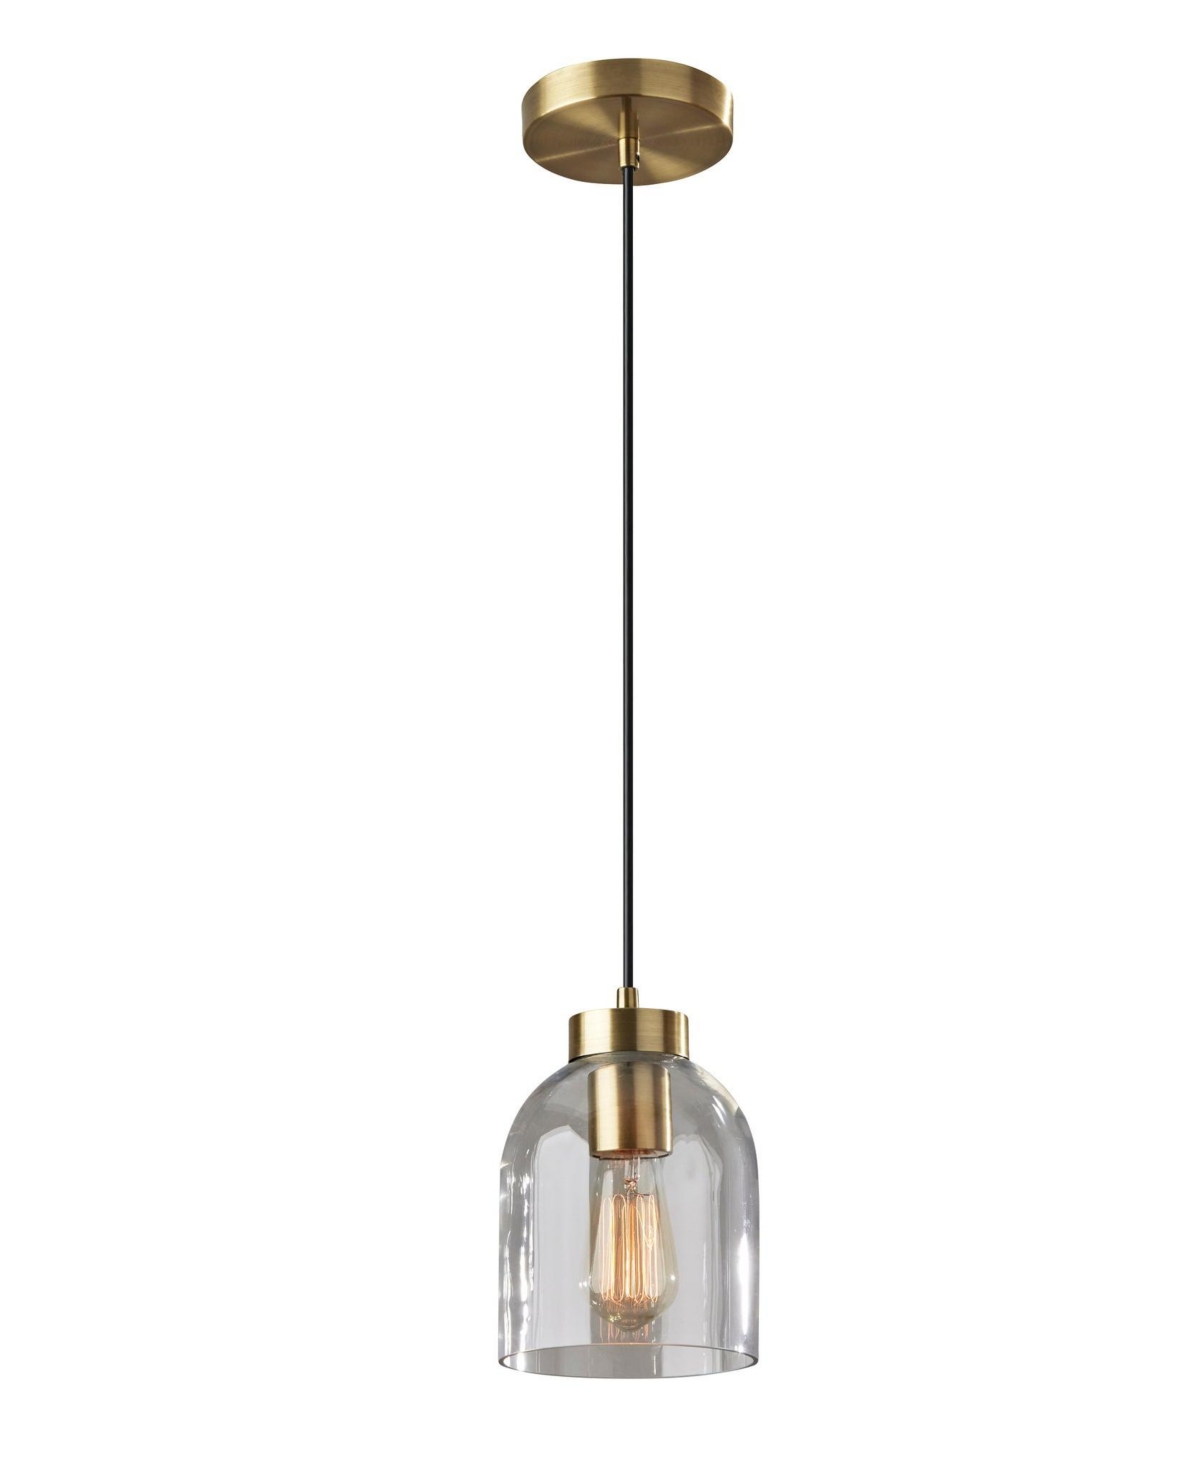 Adesso Bristol Pendant Lamp In Antique-like Brass